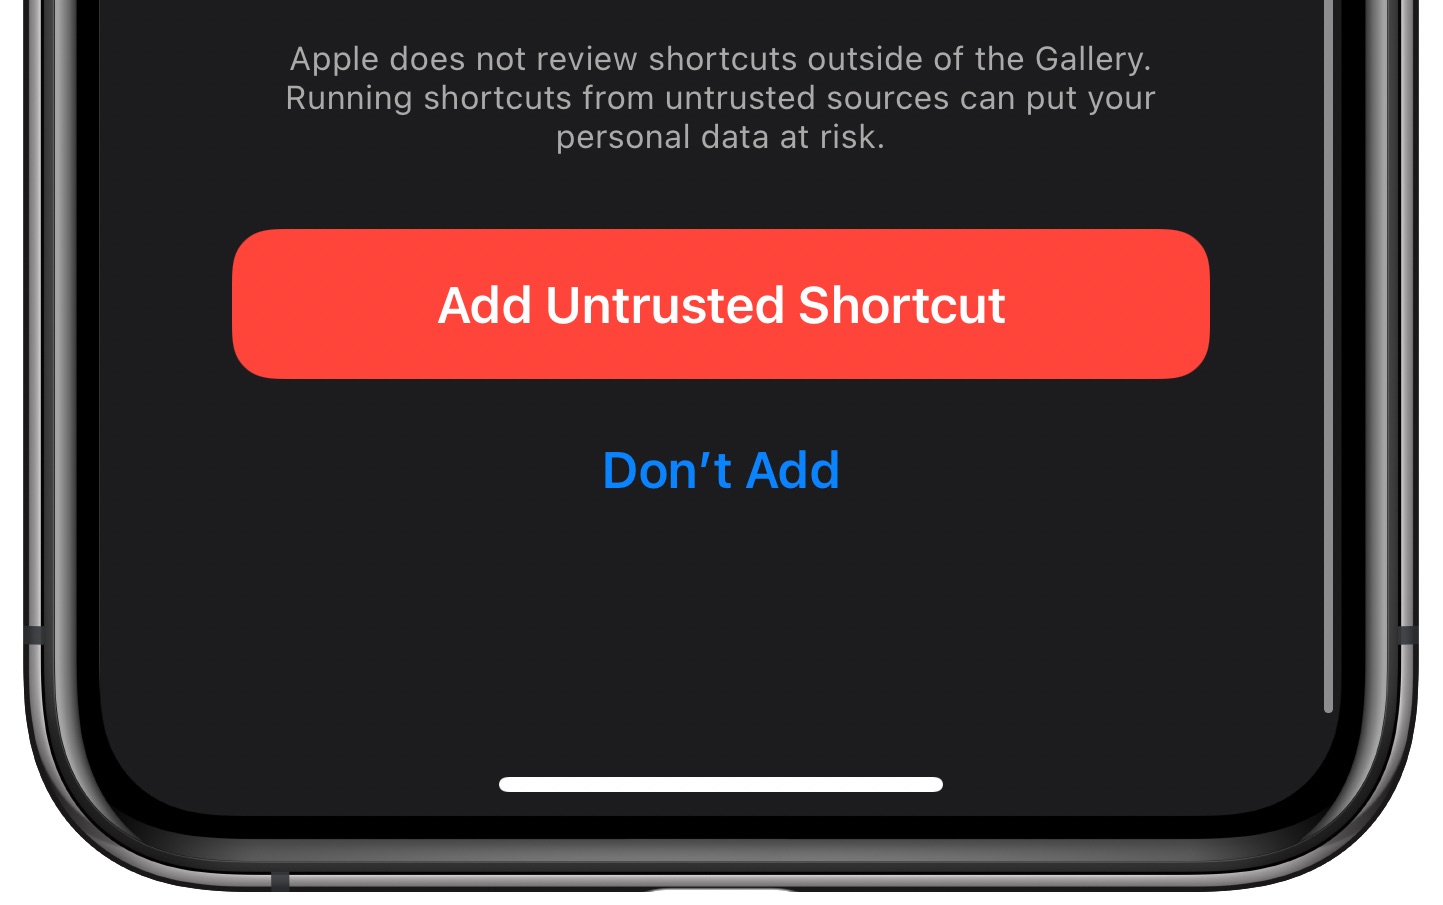 cambia automáticamente el fondo de pantalla del iPhone: añade un atajo no fiable